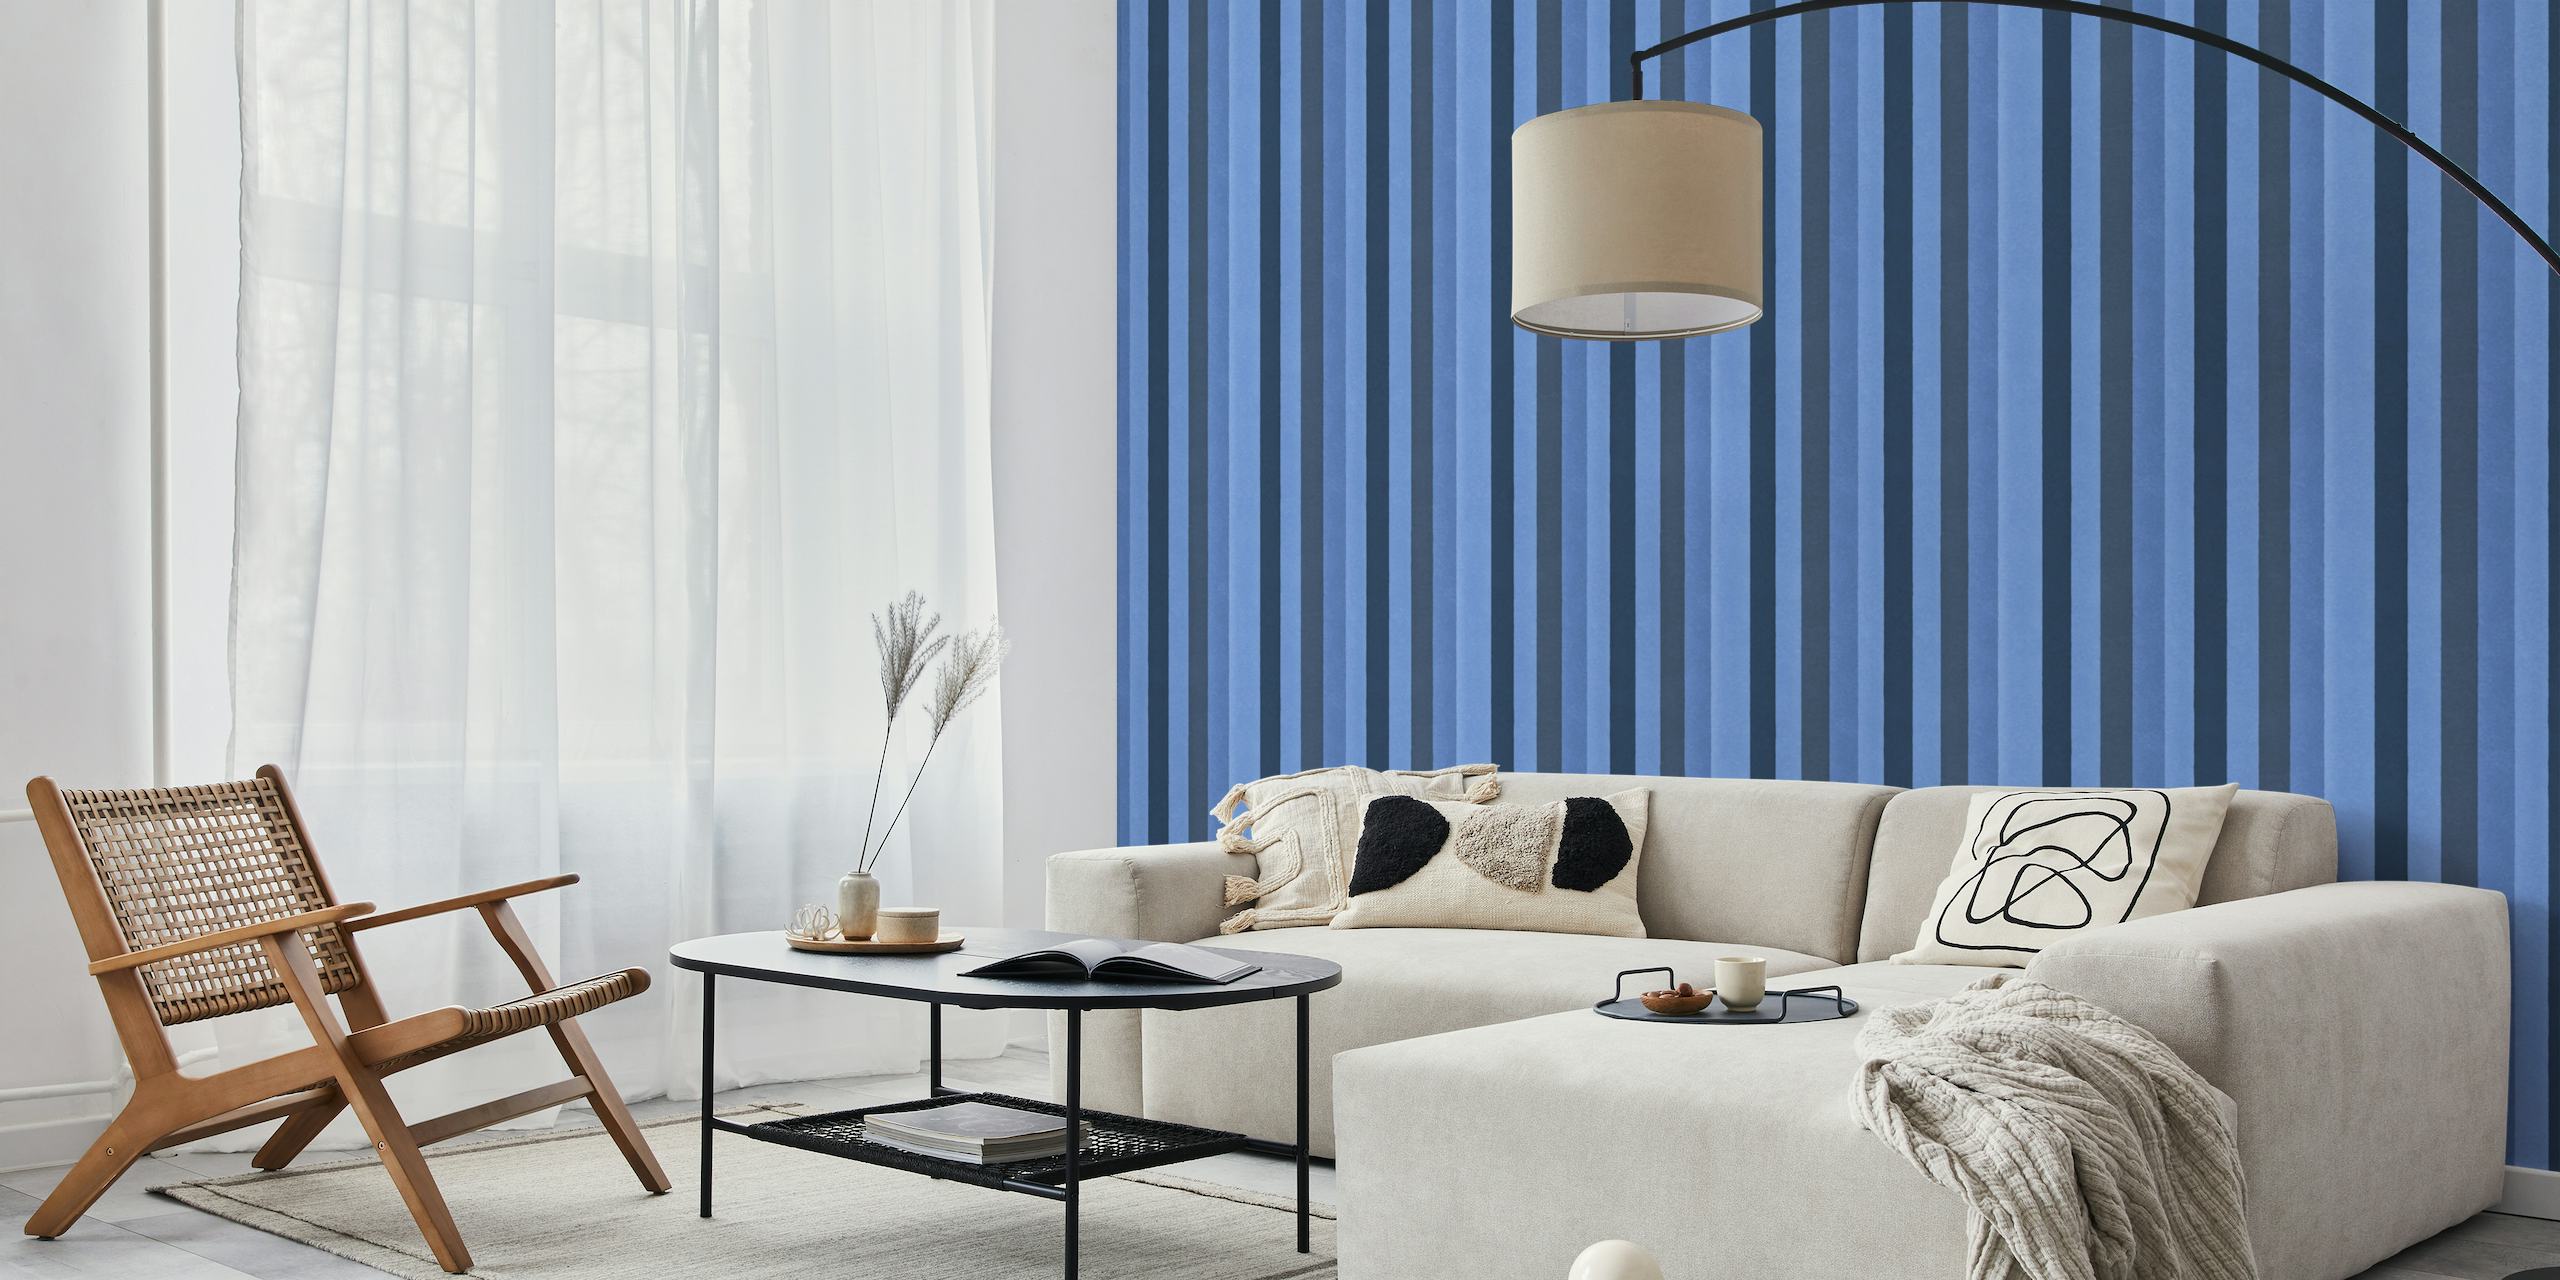 Whimsy Velvet Stripes Vertical Denim Blue behang